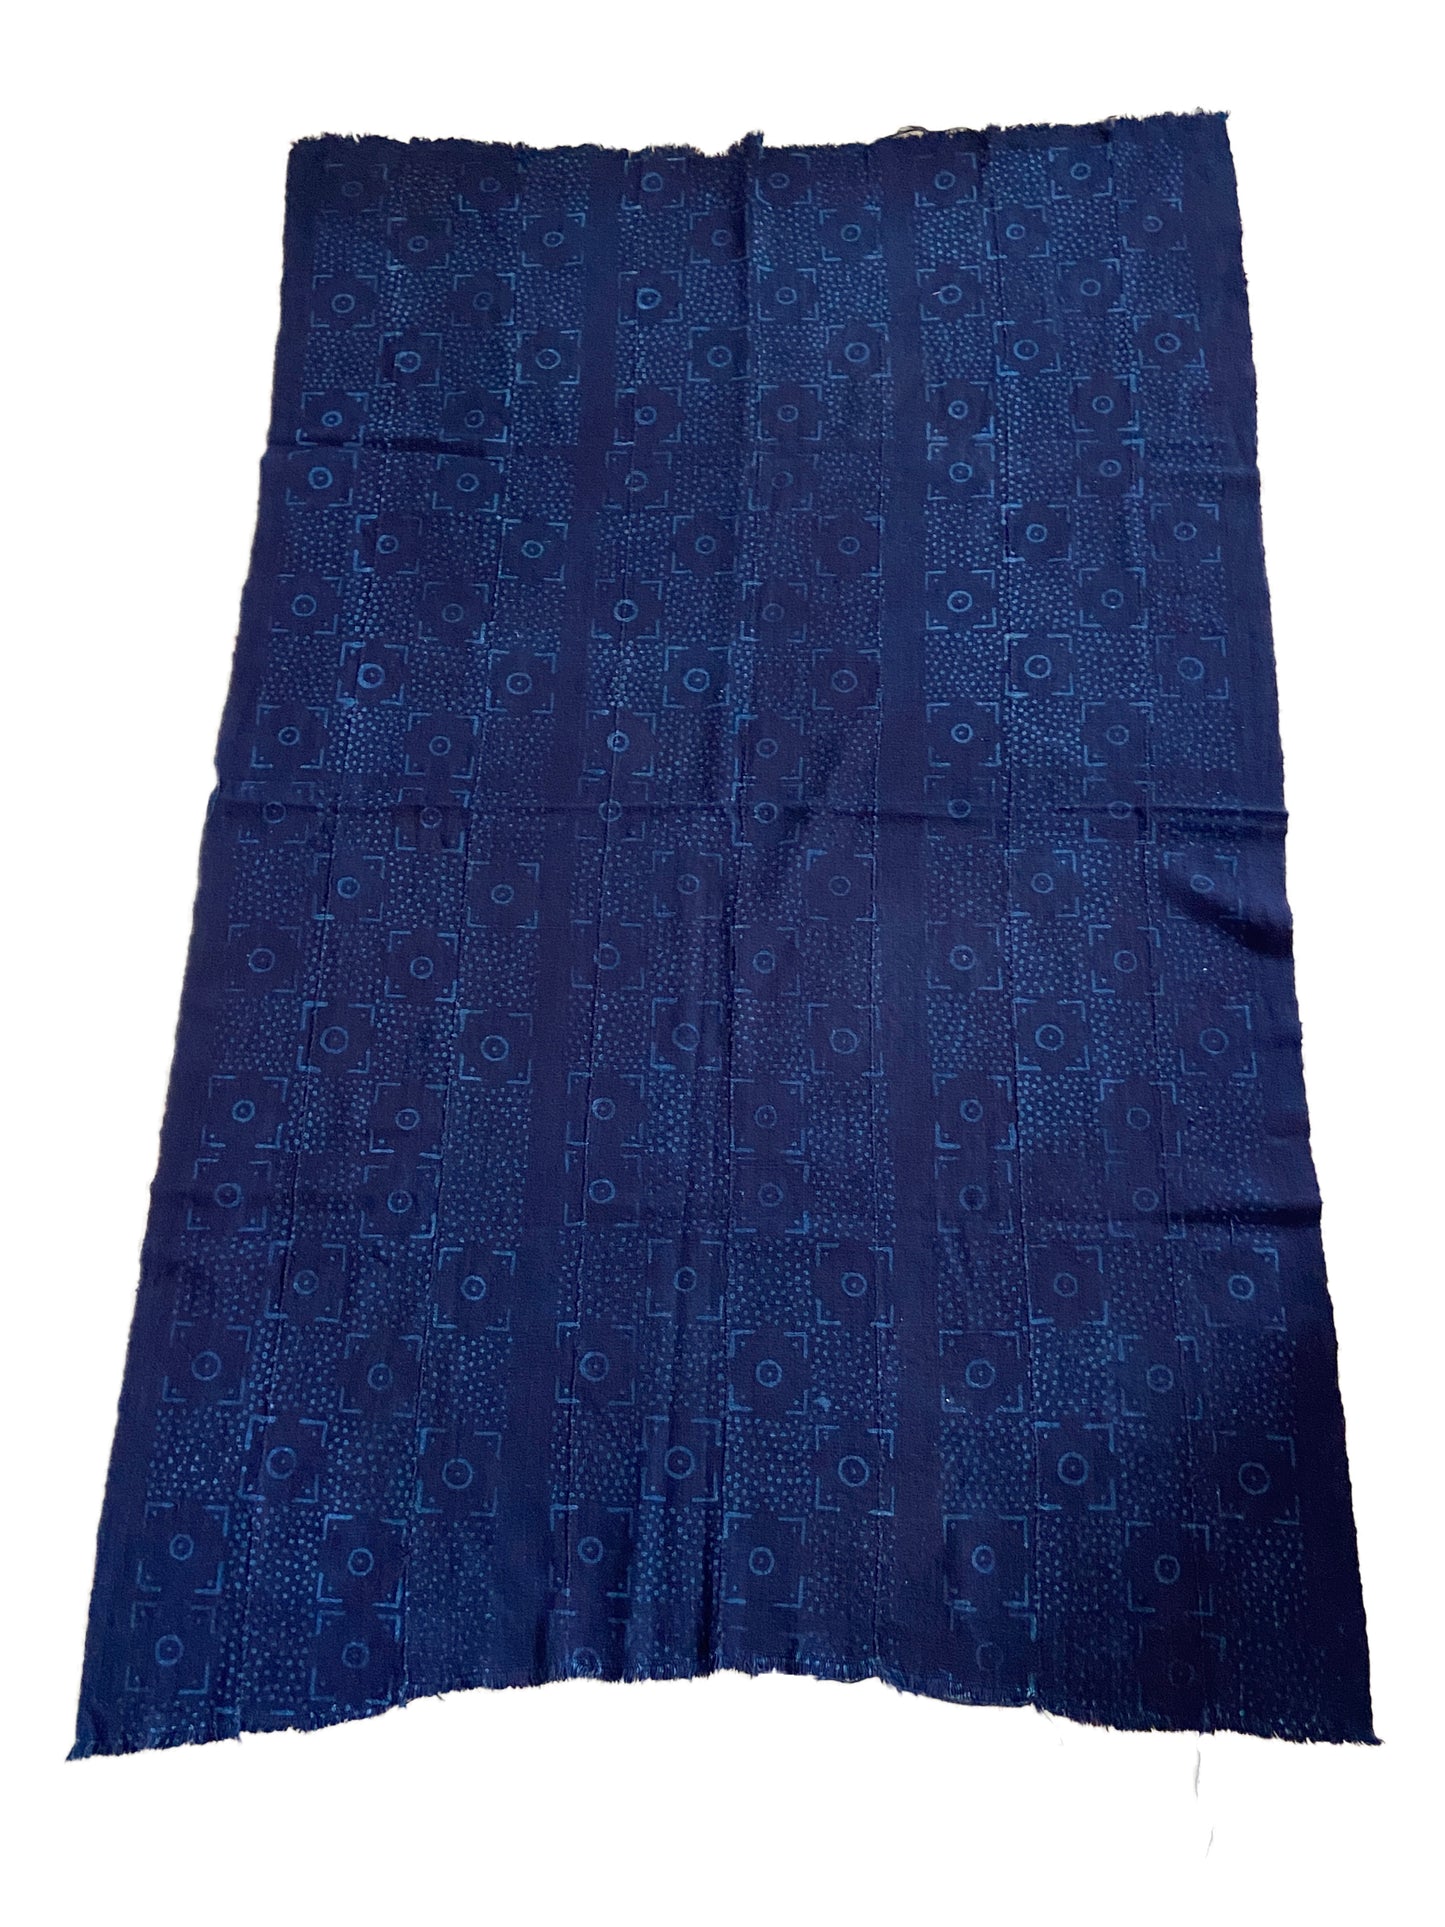 Superb Vtg Mali Indigo Mud Cloth Textile 38" by 59.5"  #3402